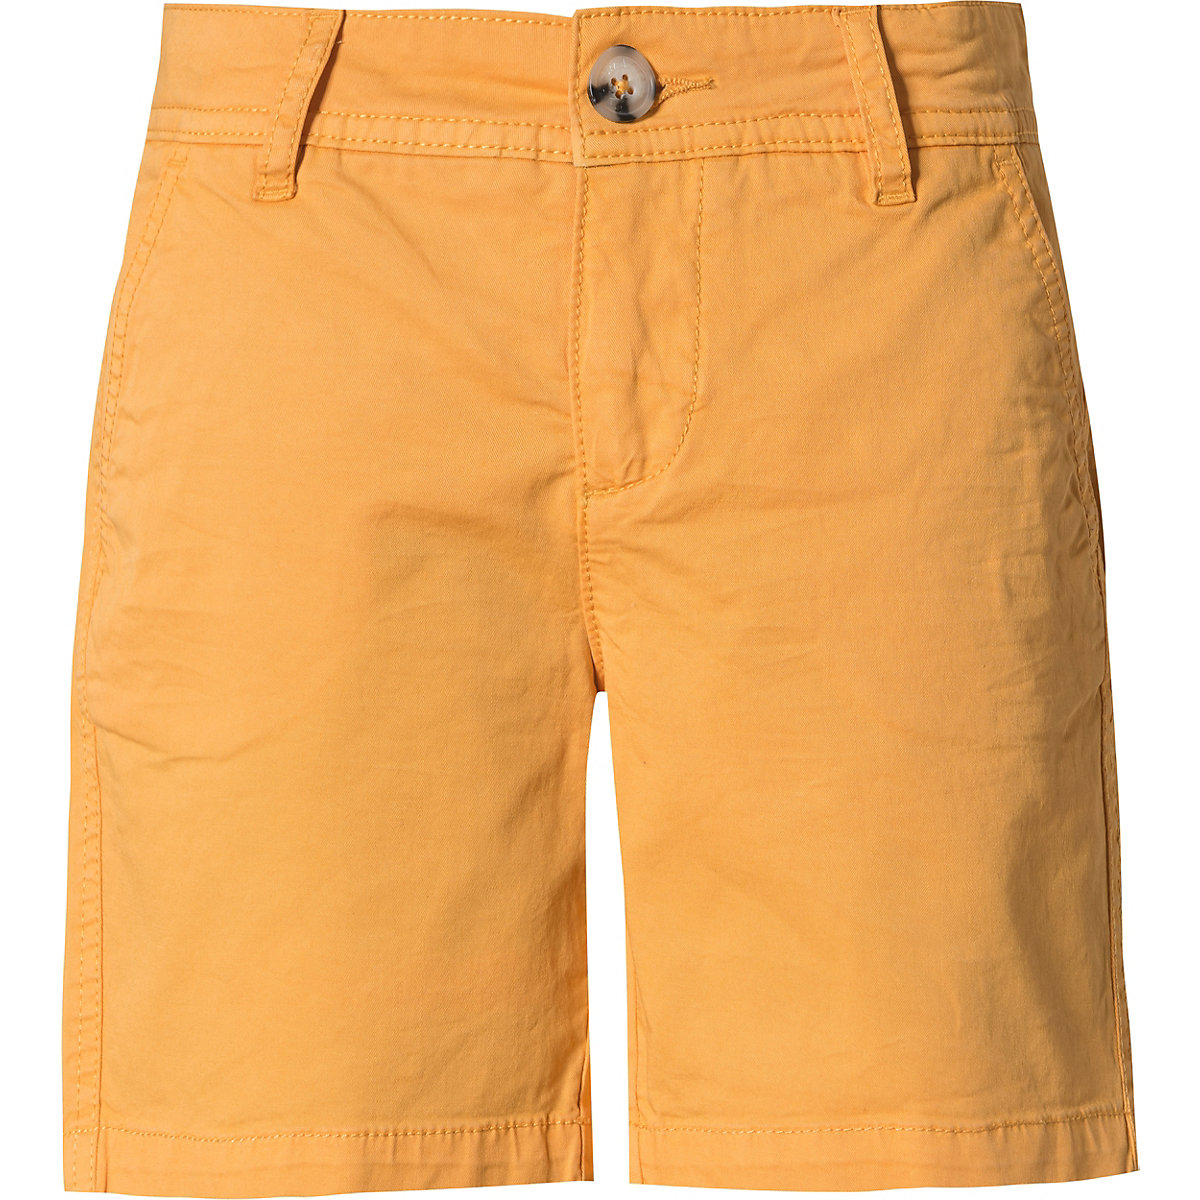 Shorts für Jungen von OKLAHOMA DENIM